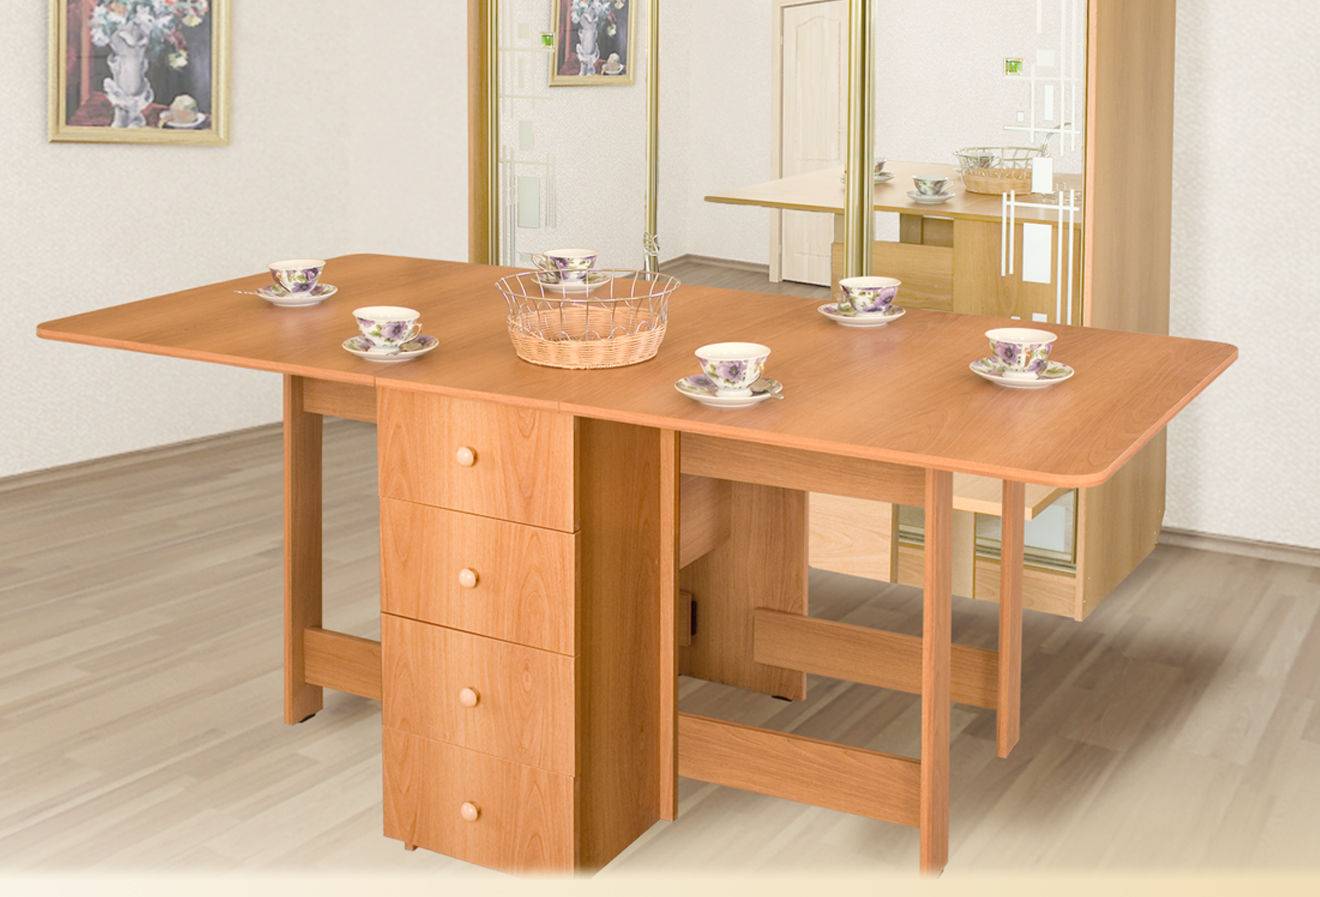 Стол в гостиную (80 фото): выбираем столик со стульями для зала, маленькие и большие модели в стиле «классика» в современном дизайне интерьера